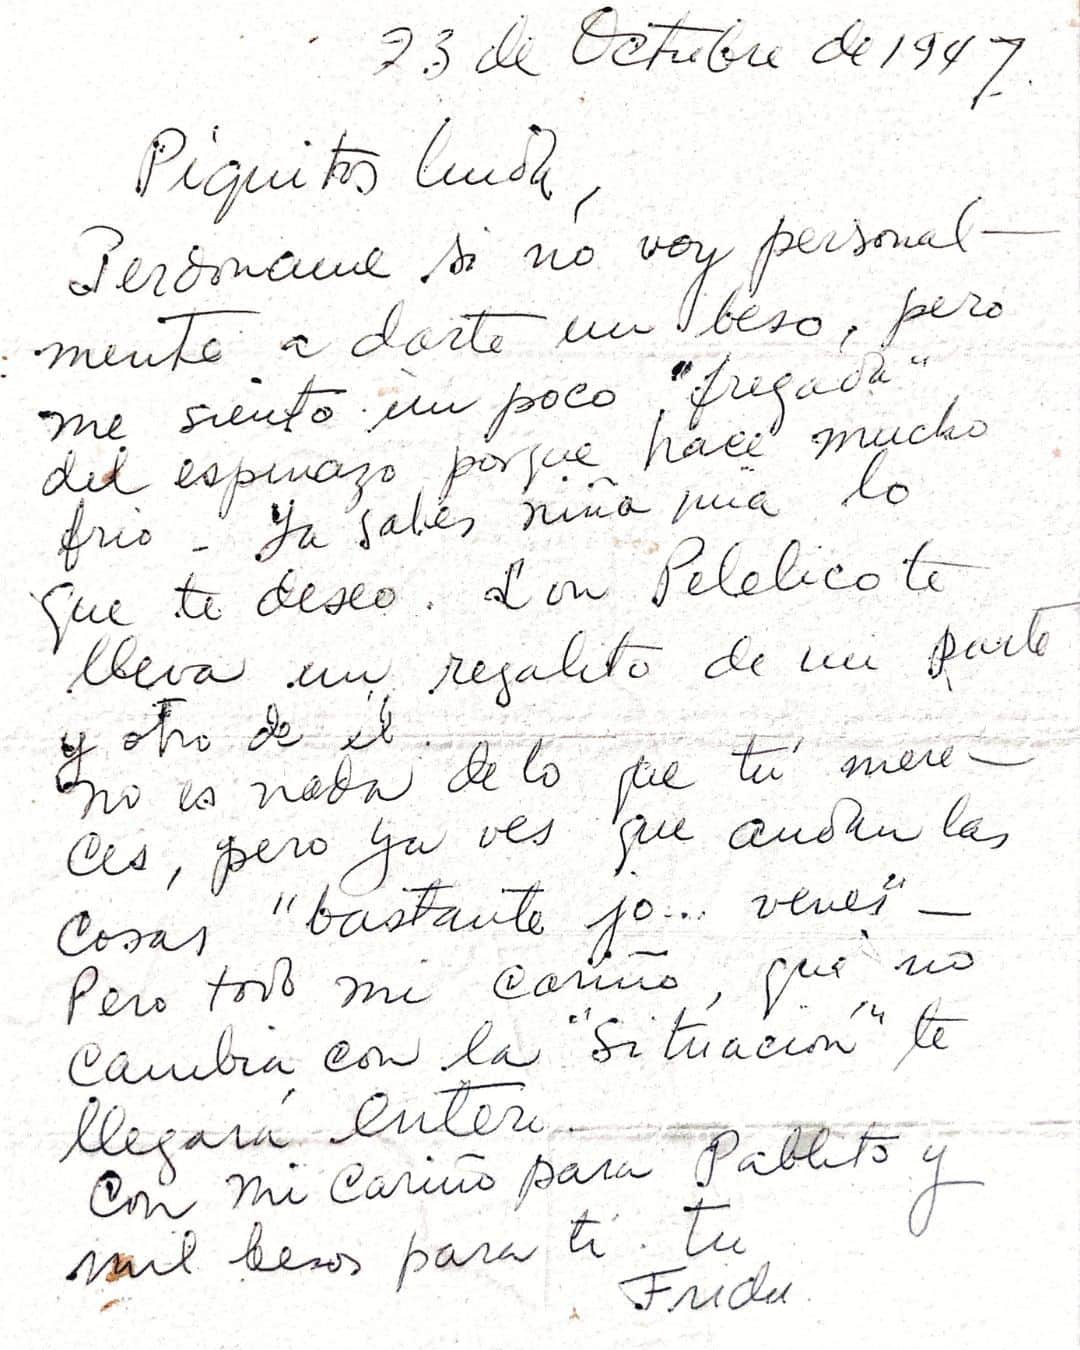 フリーダ・カーロ記念館さんのインスタグラム写真 - (フリーダ・カーロ記念館Instagram)「Hoy desde la #CasaAzul 💙 conmemoramos el nacimiento de Guadalupe "Picos" Rivera Marín, hija de #DiegoRivera 🐸. Esta carta escrita por #FridaKahlo 🌺 en 1947 refleja no solo el estrecho lazo, sino también la profunda conexión y cariño que Frida sentía por la familia Rivera.  A pesar de las adversidades y de la distancia física, la cercanía emocional siempre estuvo presente. Las palabras de Frida nos recuerdan que, independientemente de las circunstancias, el amor y el cariño genuino hacia aquellos que valoramos no cambian.  𝟮𝟯 𝗱𝗲 𝗼𝗰𝘁𝘂𝗯𝗿𝗲 𝗱𝗲 𝟭𝟵𝟰𝟳  𝗣𝗶𝗾𝘂𝗶𝘁𝗼𝘀 𝗹𝗶𝗻𝗱𝗮, �𝗣𝗲𝗿𝗱ó𝗻𝗮𝗺𝗲 𝘀𝗶 𝗻𝗼 𝘃𝗼𝘆 𝗽𝗲𝗿𝘀𝗼𝗻𝗮𝗹𝗺𝗲𝗻𝘁𝗲 𝗮 𝗱𝗮𝗿𝘁𝗲 𝘂𝗻 𝗯𝗲𝘀𝗼, 𝗽𝗲𝗿𝗼 𝗺𝗲 𝘀𝗶𝗲𝗻𝘁𝗼 𝘂𝗻 𝗽𝗼𝗰𝗼 “𝗳𝗿𝗲𝗴𝗮𝗱𝗮” 𝗱𝗲𝗹 𝗲𝘀𝗽𝗶𝗻𝗮𝘇𝗼 𝗽𝗼𝗿𝗾𝘂𝗲 𝗵𝗮𝗰𝗲 𝗺𝘂𝗰𝗵𝗼 𝗳𝗿í𝗼. 𝗬𝗮 𝘀𝗮𝗯𝗲𝘀 𝗻𝗶ñ𝗮 𝗺í𝗮 𝗹𝗼 𝗾𝘂𝗲 𝘁𝗲 𝗱𝗲𝘀𝗲𝗼. 𝗖𝗼𝗻 𝗣𝗮𝗯𝗹𝗶𝘁𝗼 𝘁𝗲 𝗹𝗹𝗲𝘃𝗮 𝘂𝗻 𝗿𝗲𝗴𝗮𝗹𝗶𝘁𝗼 𝗱𝗲 𝗺𝗶 𝗽𝗮𝗿𝘁𝗲 𝘆 𝗼𝘁𝗿𝗼 𝗱𝗲 é𝗹.𝗡𝗶 𝗲𝘀 𝗻𝗮𝗱𝗮 𝗱𝗲 𝗹𝗼 𝗾𝘂𝗲 𝘁ú 𝗺𝗲𝗿𝗲𝗰𝗲𝘀, 𝗽𝗲𝗿𝗼 𝘆𝗮 𝘃𝗲𝘀 𝗾𝘂𝗲 𝗮𝗻𝗱𝗮𝗻 𝗹𝗮𝘀 𝗰𝗼𝘀𝗮𝘀 “𝗯𝗮𝘀𝘁𝗮𝗻𝘁𝗲𝘀 𝗷𝗼… 𝘃𝗲𝗻𝗲𝘀”. 𝗣𝗲𝗿𝗼 𝘁𝗼𝗱𝗼 𝗺𝗶 𝗰𝗮𝗿𝗶ñ𝗼, 𝗾𝘂𝗲 𝗻𝗼 𝗰𝗮𝗺𝗯𝗶𝗮 𝗰𝗼𝗻 𝗹𝗮 “𝘀𝗶𝘁𝘂𝗮𝗰𝗶ó𝗻” 𝘁𝗲 𝗹𝗹𝗲𝗴𝗮𝗿á 𝗲𝗻𝘁𝗲𝗿𝗼.𝗖𝗼𝗻 𝗺𝗶 𝗰𝗮𝗿𝗶ñ𝗼 𝗽𝗮𝗿𝗮 𝗣𝗮𝗯𝗹𝗶𝘁𝗼 𝘆 𝗺𝗶𝗹 𝗯𝗲𝘀𝗼𝘀 𝗽𝗮𝗿𝗮 𝘁í. 𝗧𝘂 𝗙𝗿𝗶𝗱𝗮.  📃Carta del acervo documental de la Colección de la Familia Rivera. Cortesía Juan Pablo Gómez Morín Rivera. Carta de Frida Kahlo a Guadalupe Rivera Marín. 23 de octubre de 1947. Coyoacán, Ciudad de México.」10月23日 22時01分 - museofridakahlo